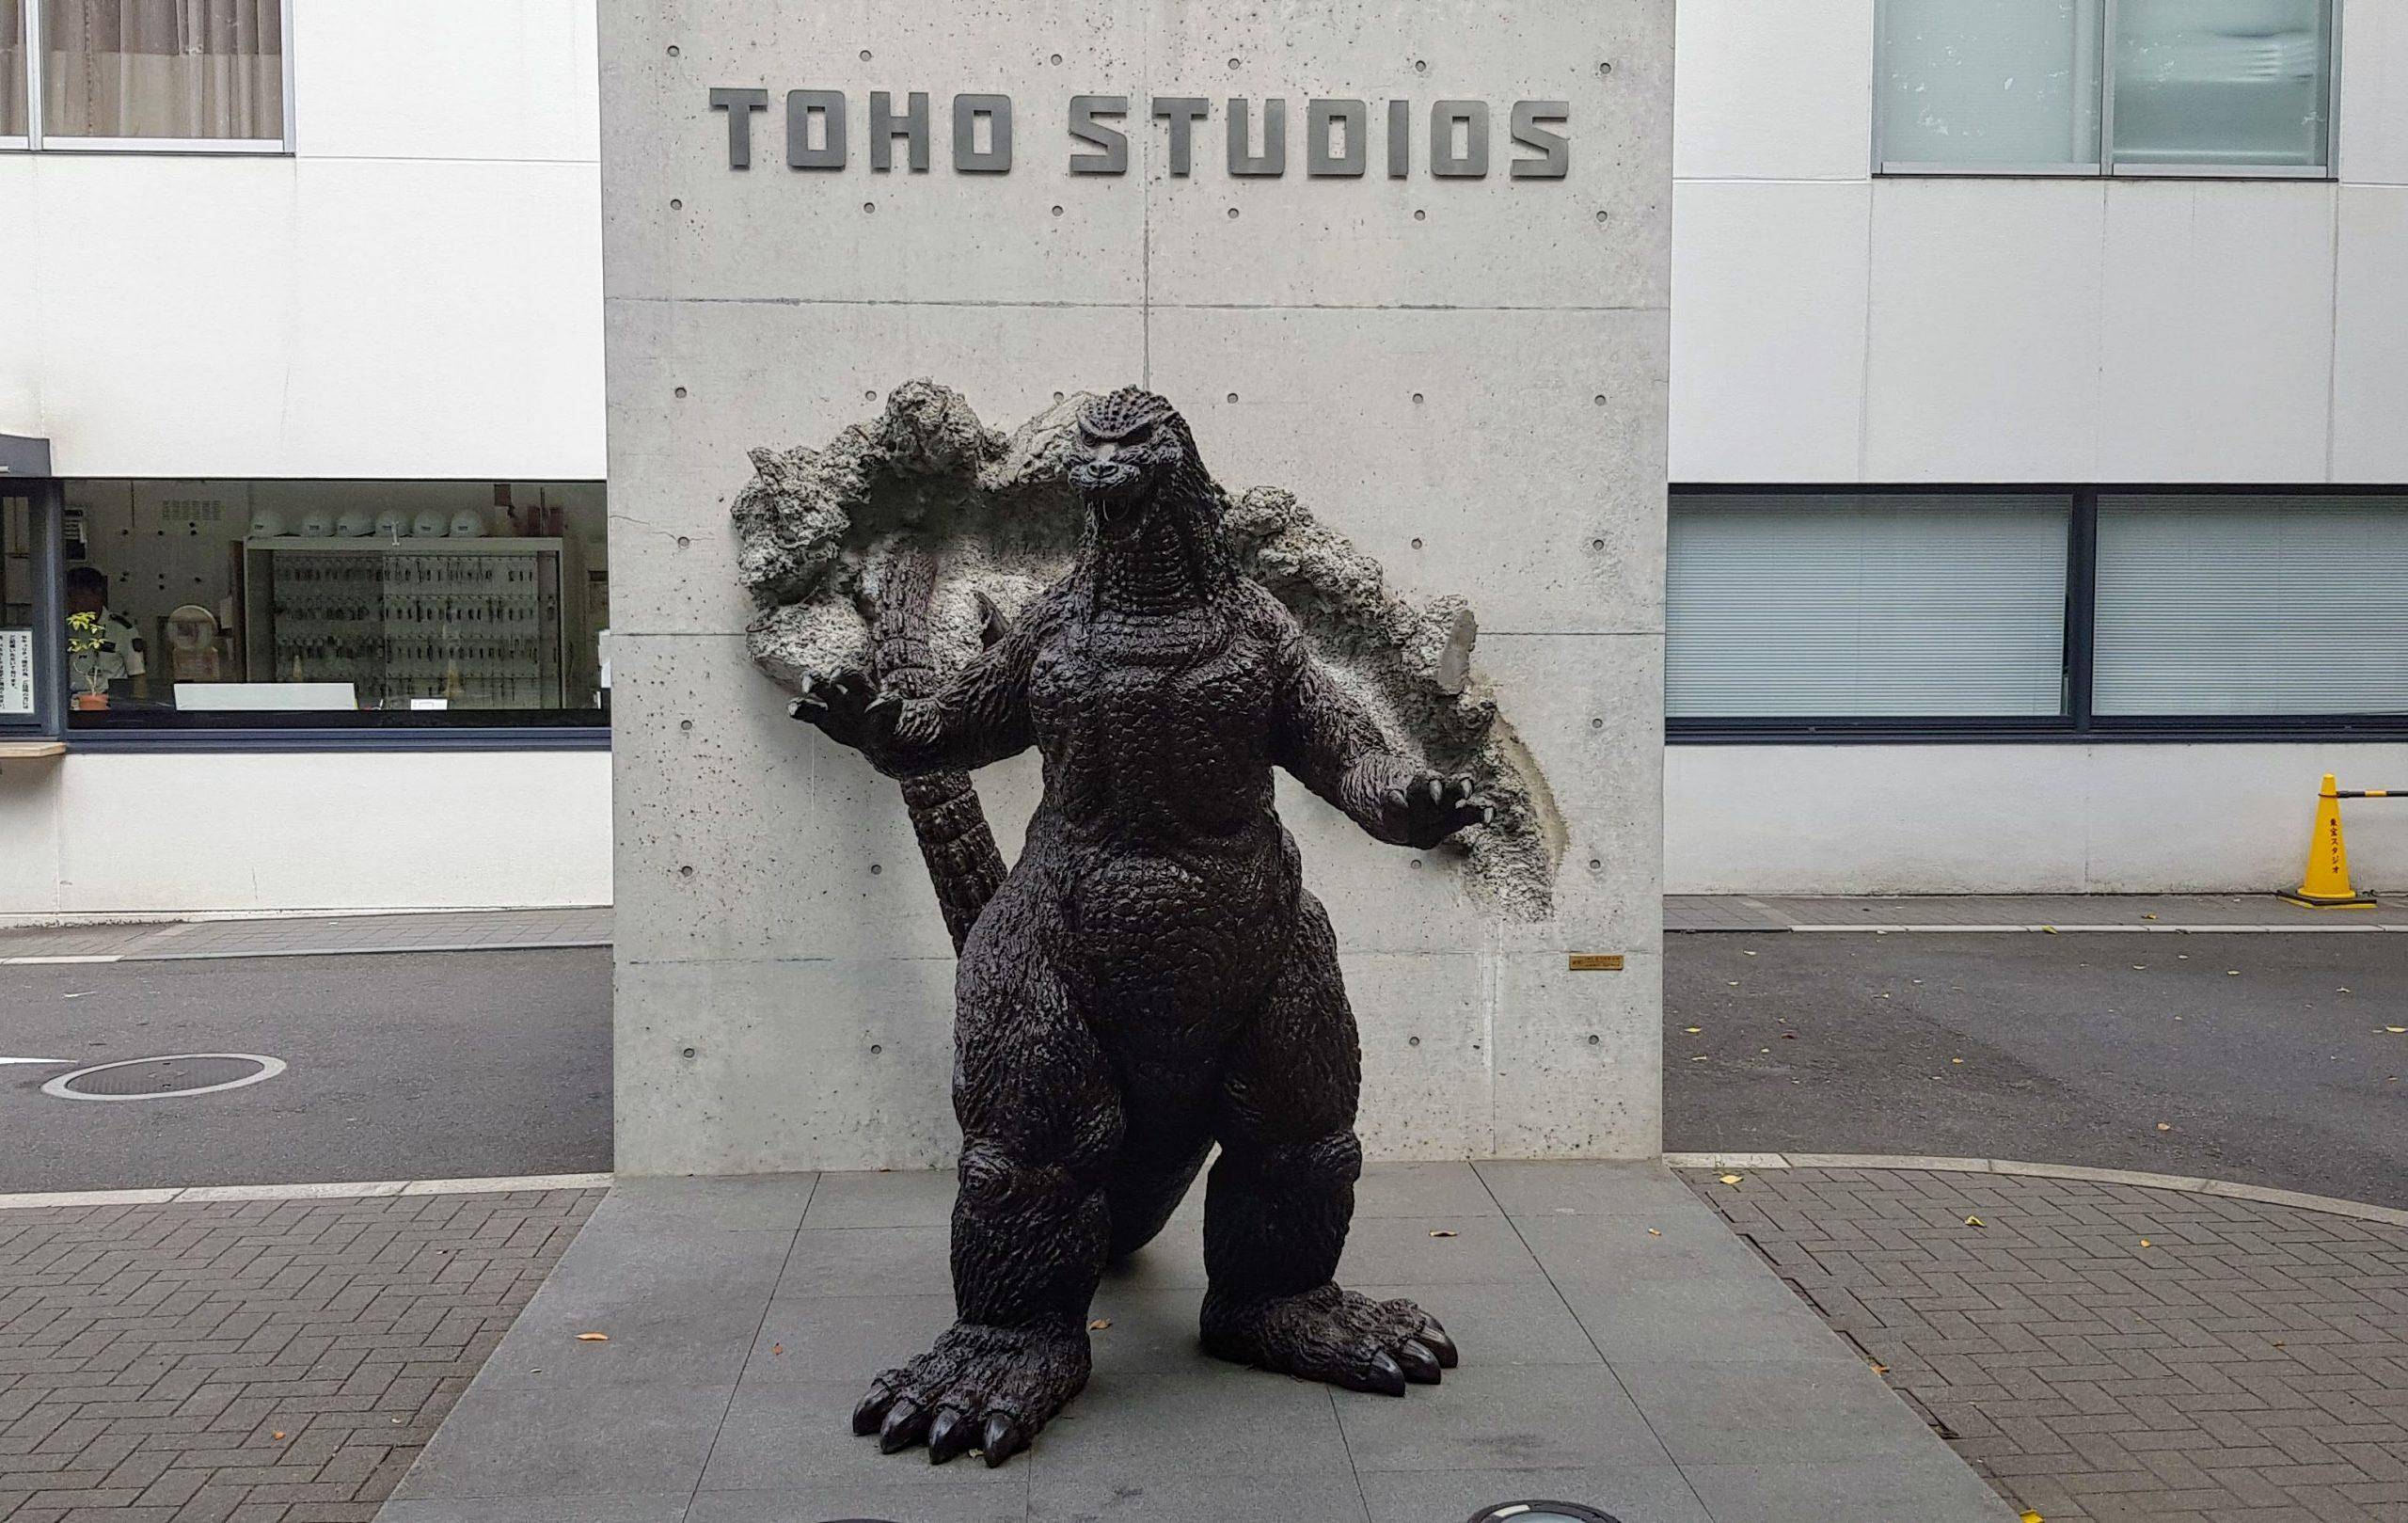 Toho´s es la empresa dueña y creadora de Godzilla. Ha anunciado su intención de crear nuevas producciones de Godzilla en Japón. 